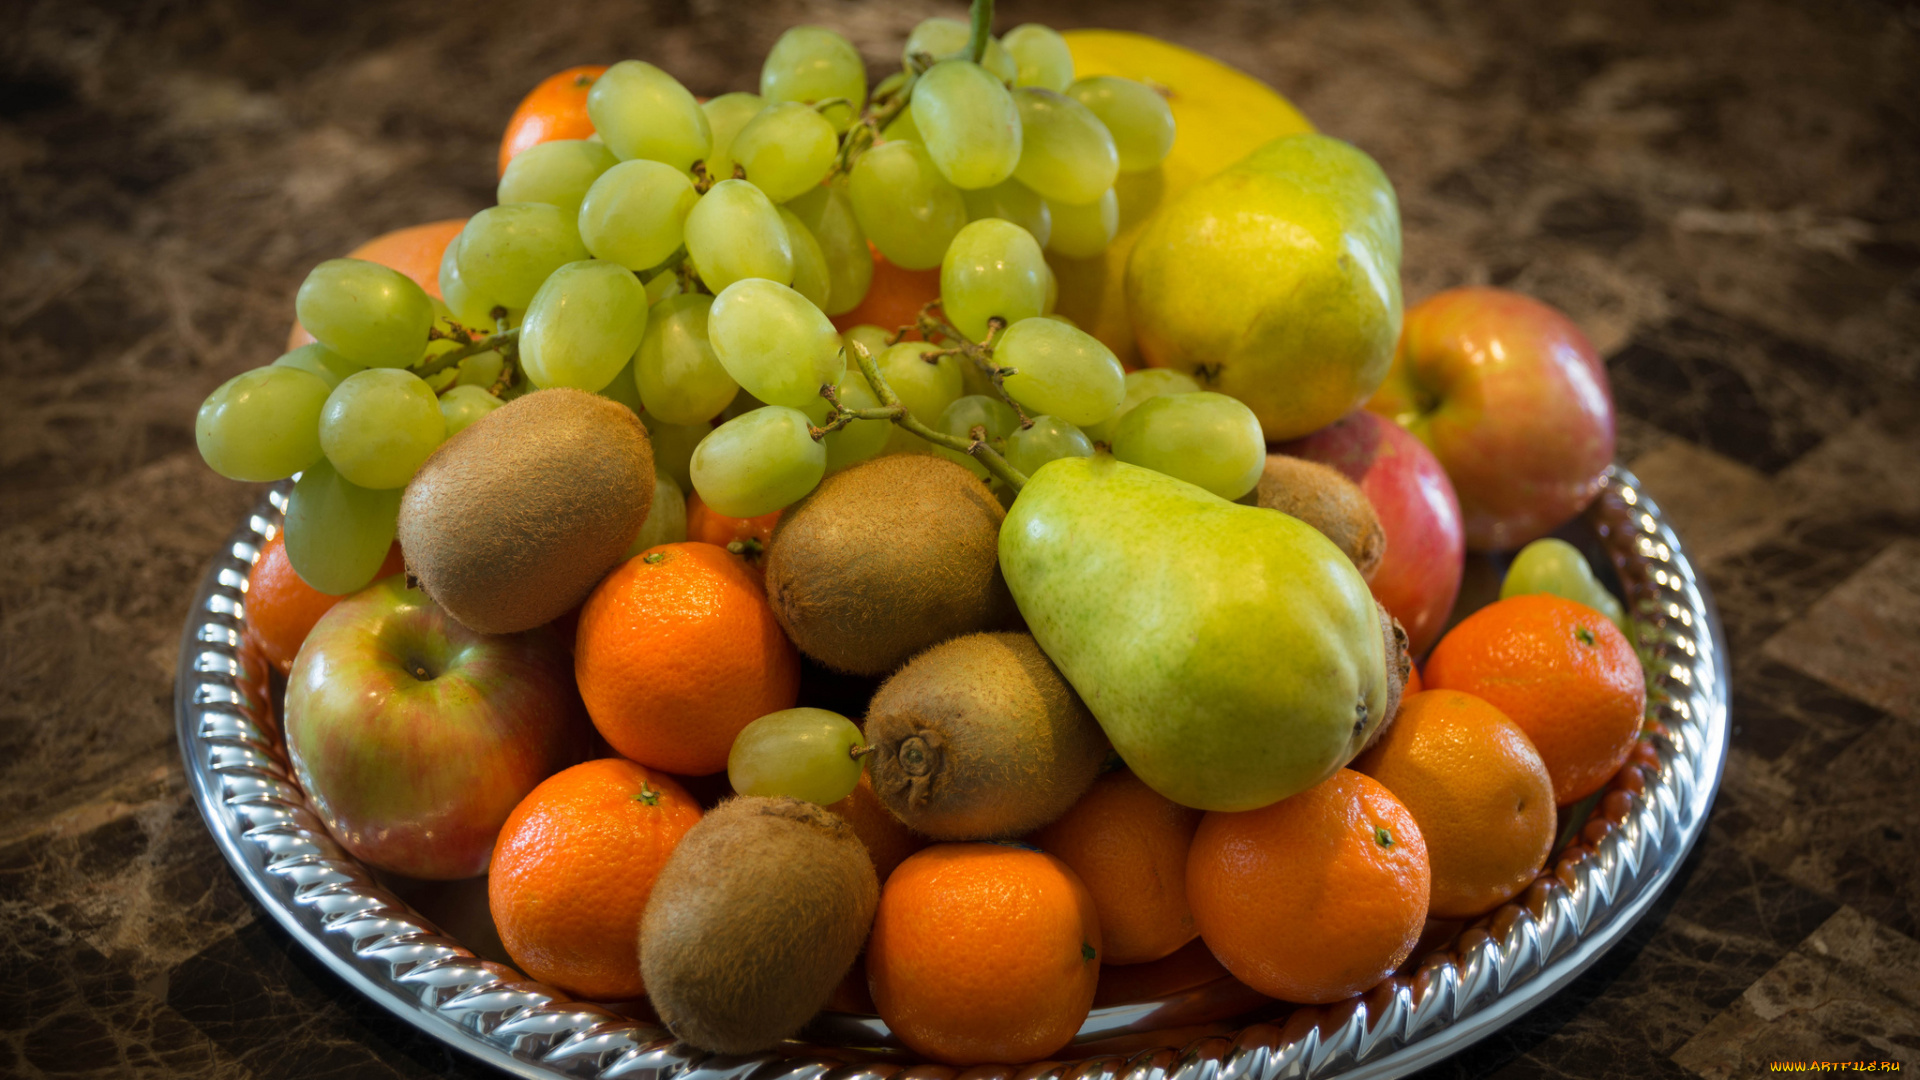 еда, фрукты, , ягоды, киви, груша, мандарины, виноград, яблоки